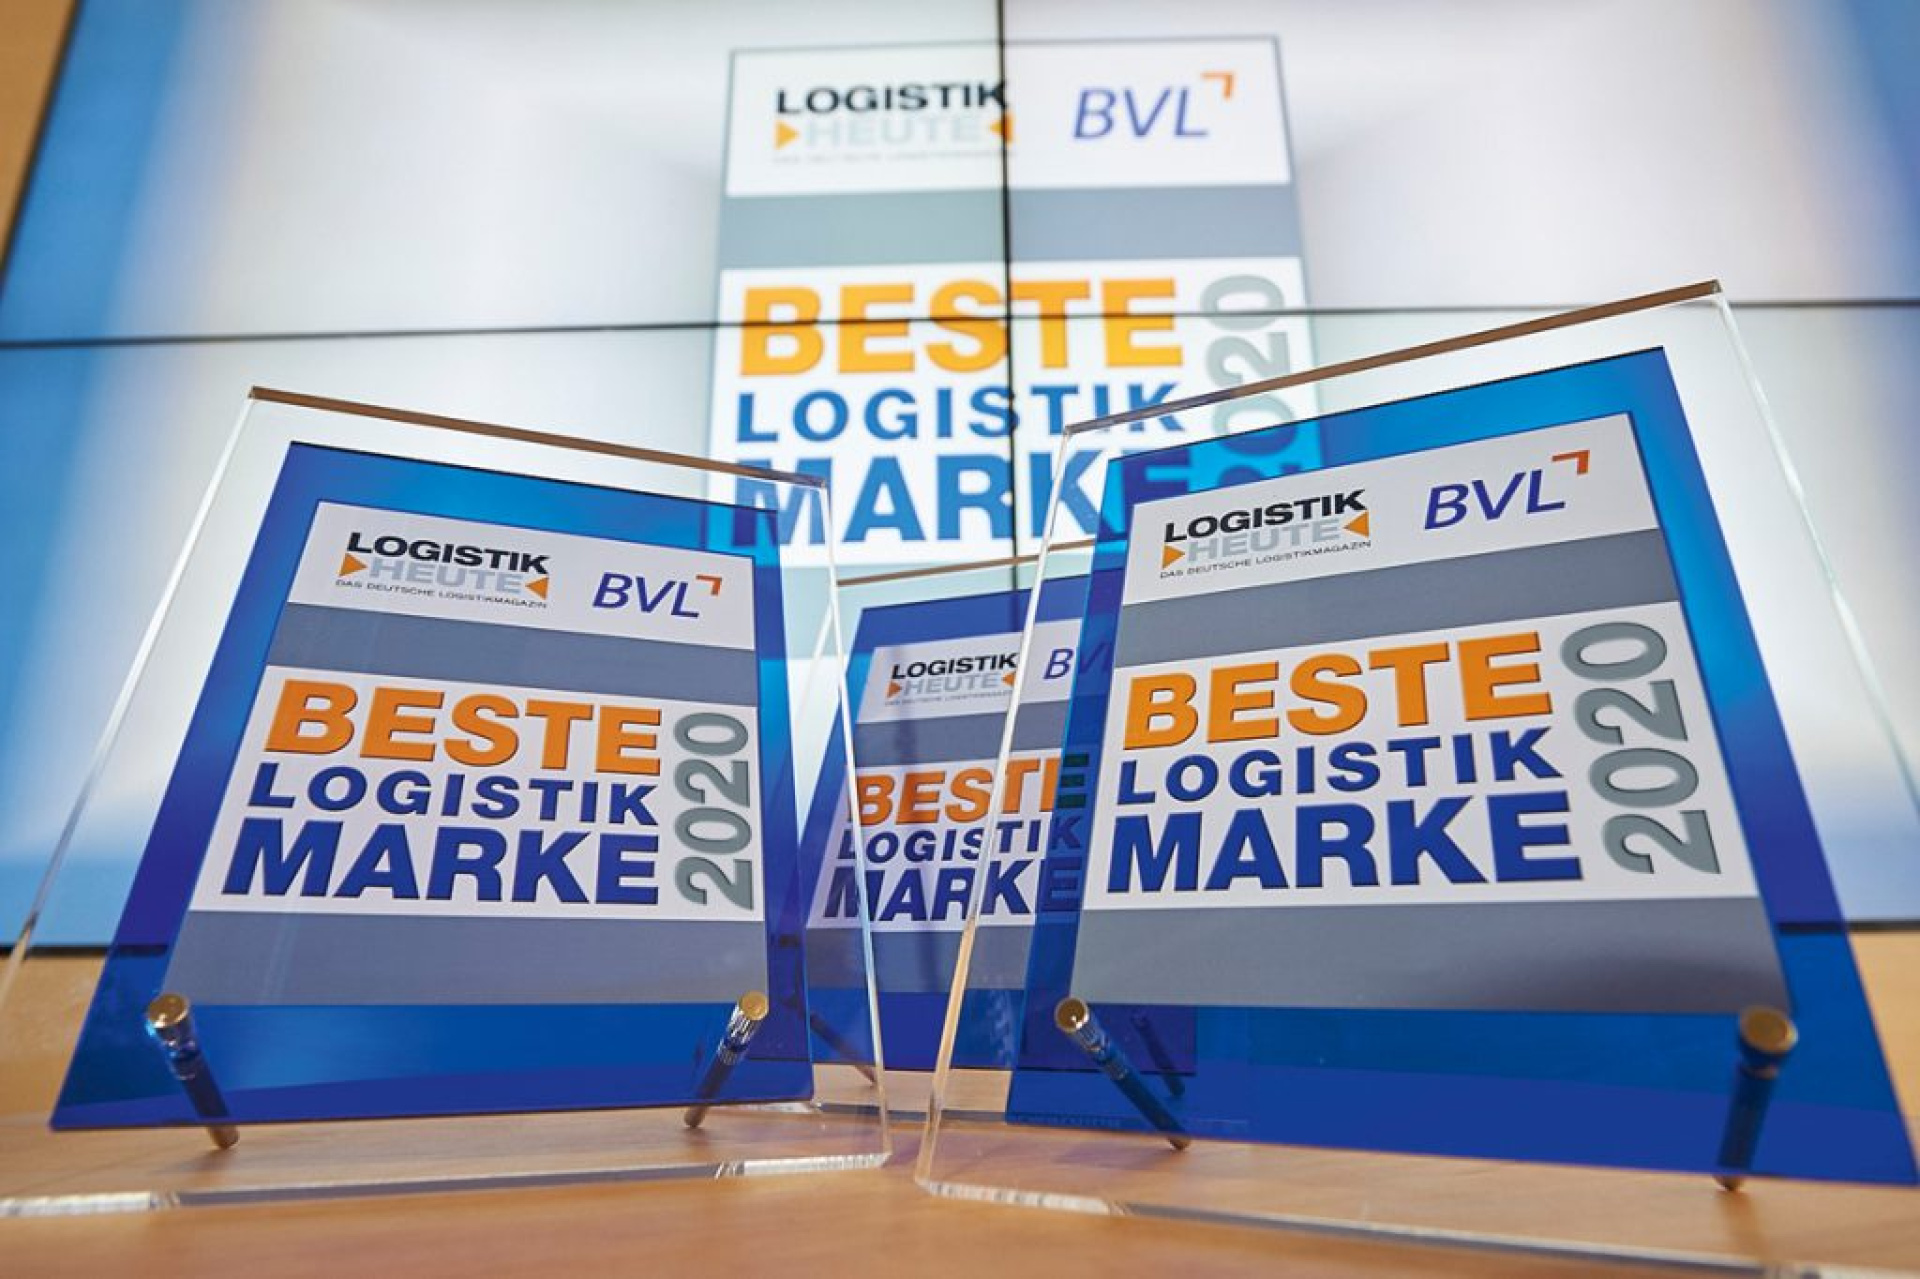 Award "Beste Logistik Marke"